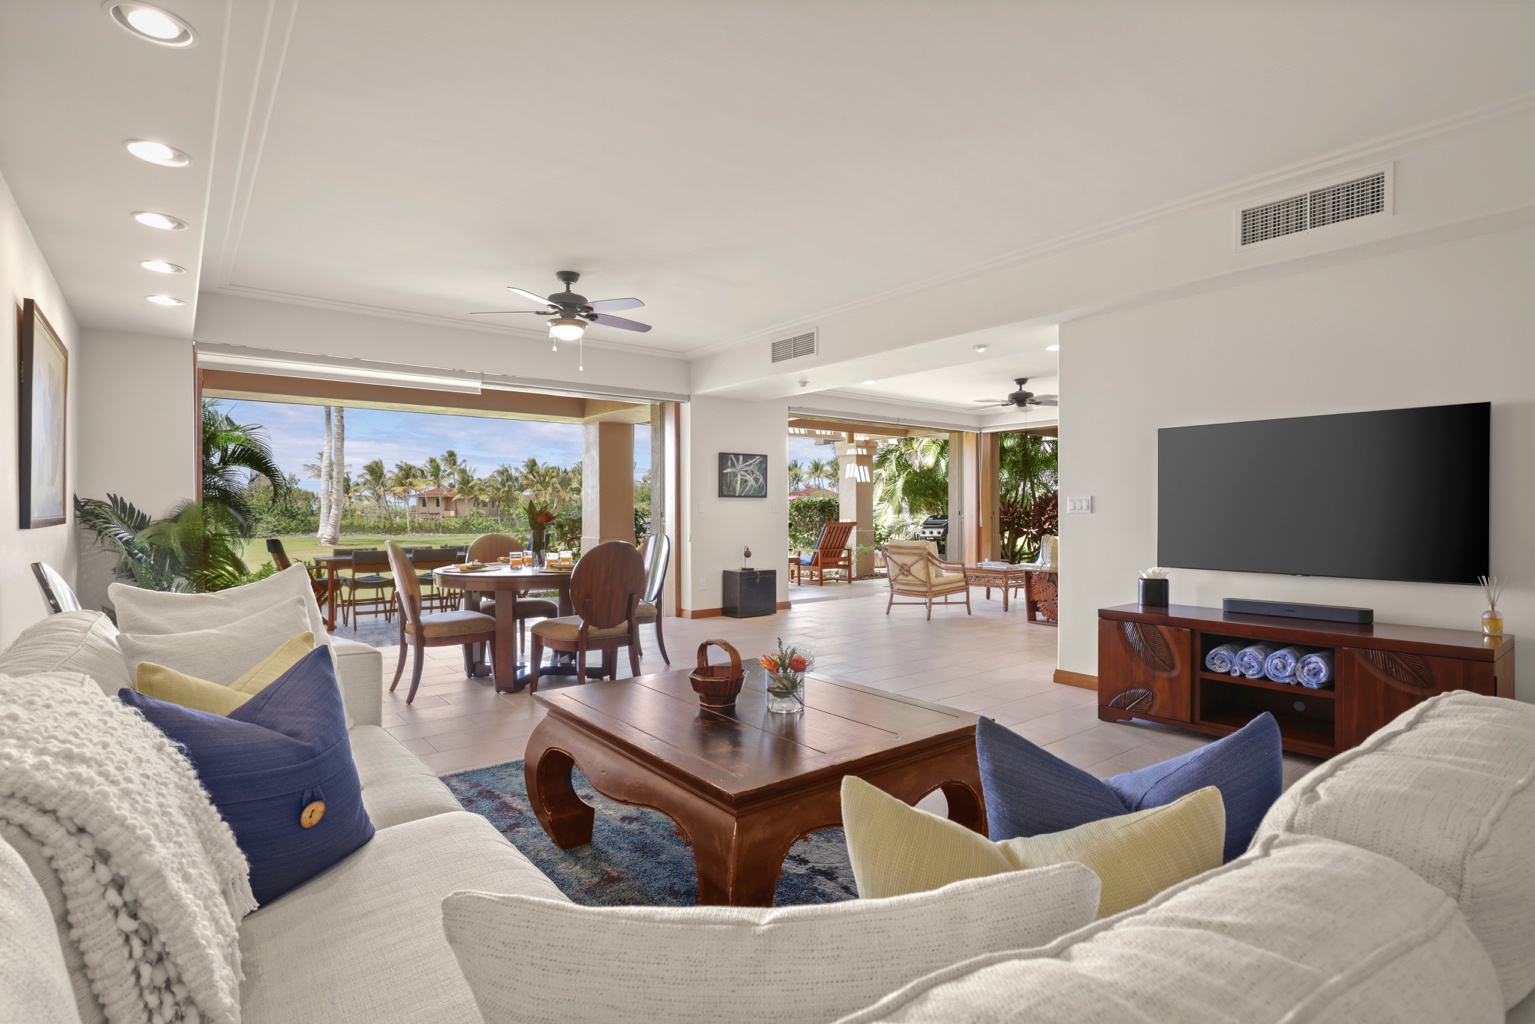 Kailua Kona Vacation Rentals, 3BD Golf Villa (3101) at Four Seasons Resort at Hualalai - Elegant living area with sliding glass pocket doors to lanai seating and ocean views.